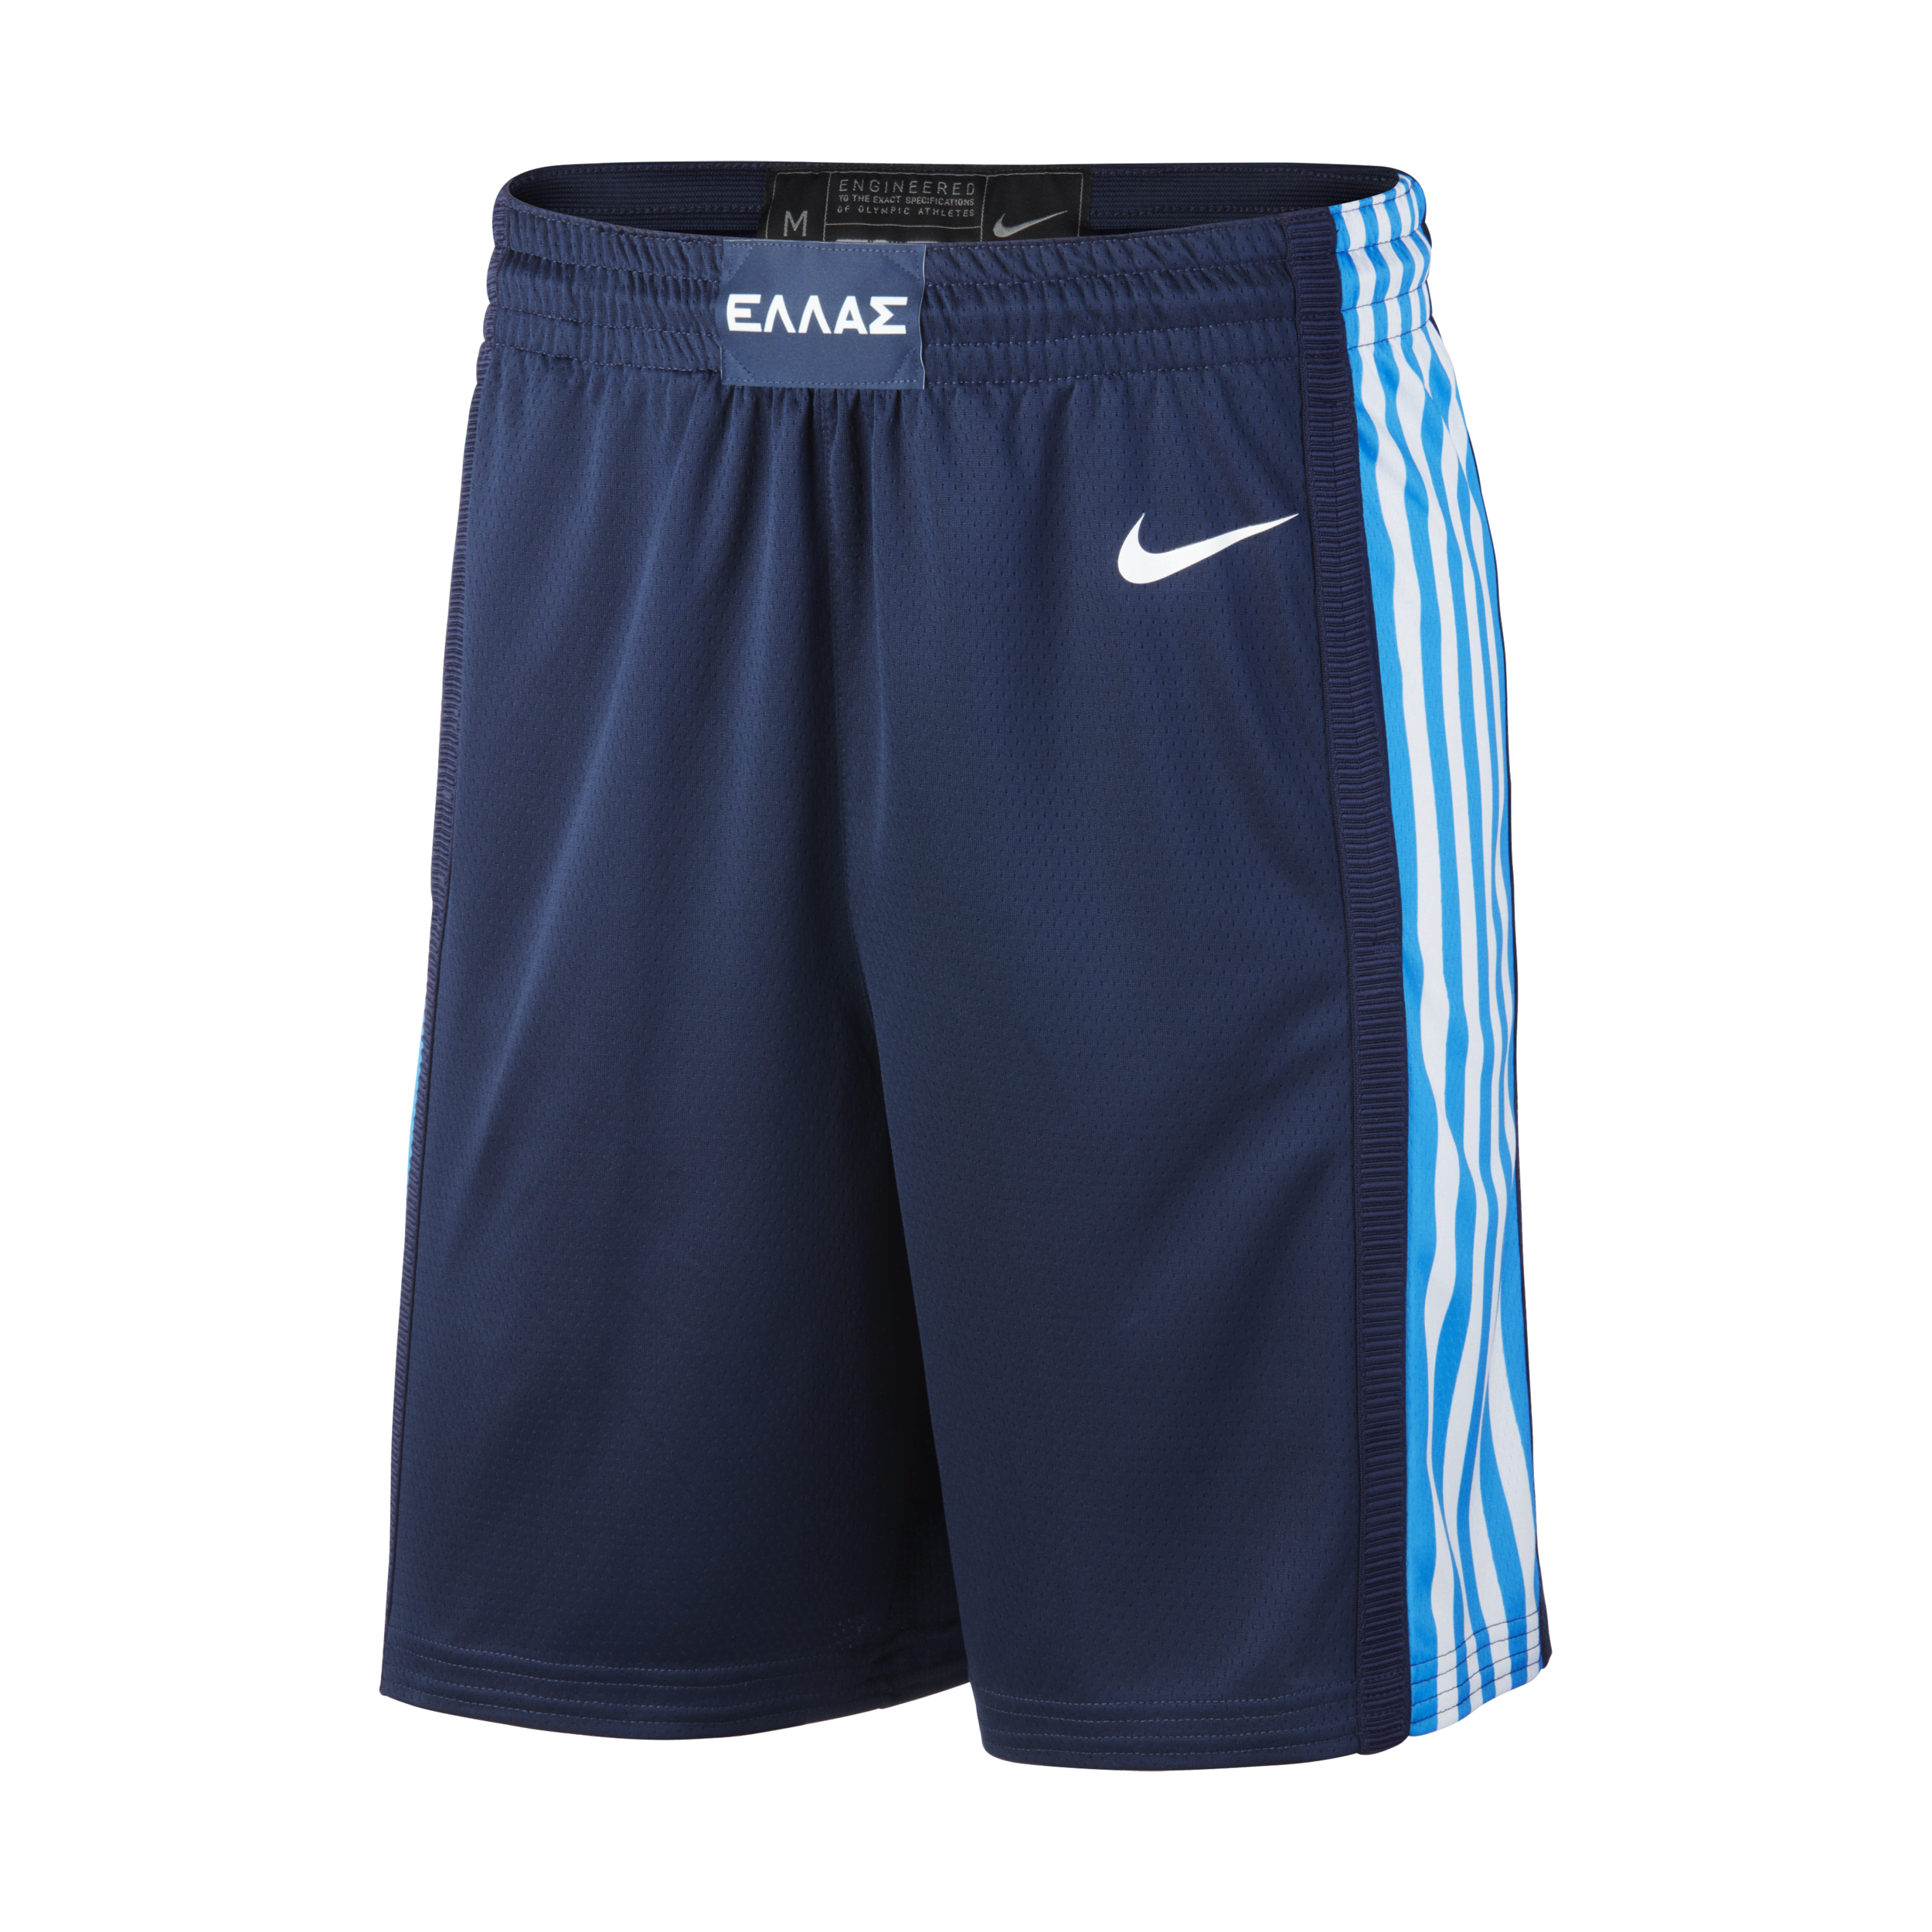 Griekenland Nike (Road) Limited Basketbalshorts voor heren - Blauw